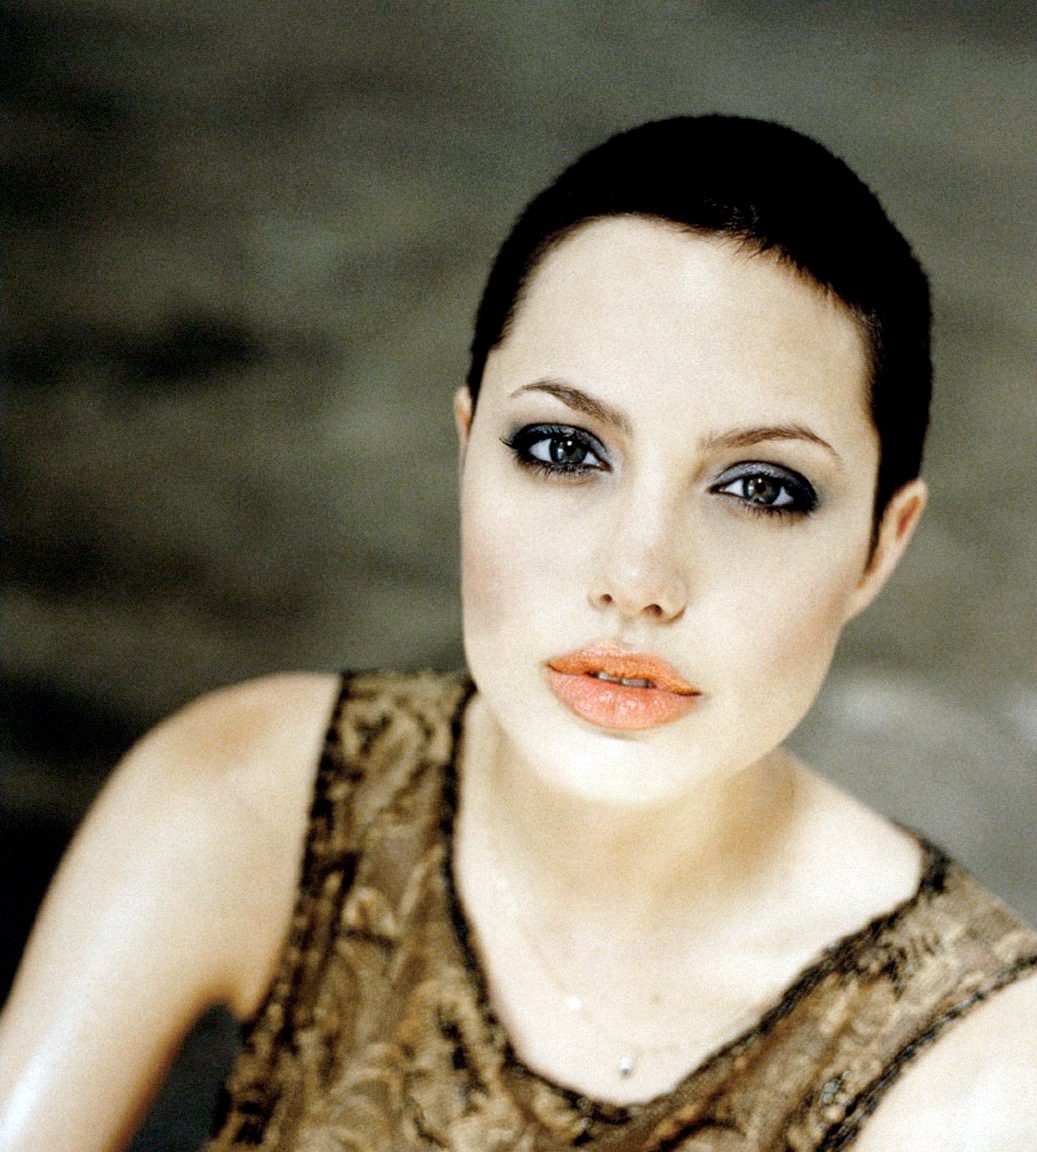 #AngelinaJoliePitt #photoshott #1998 #NaomiKaltman